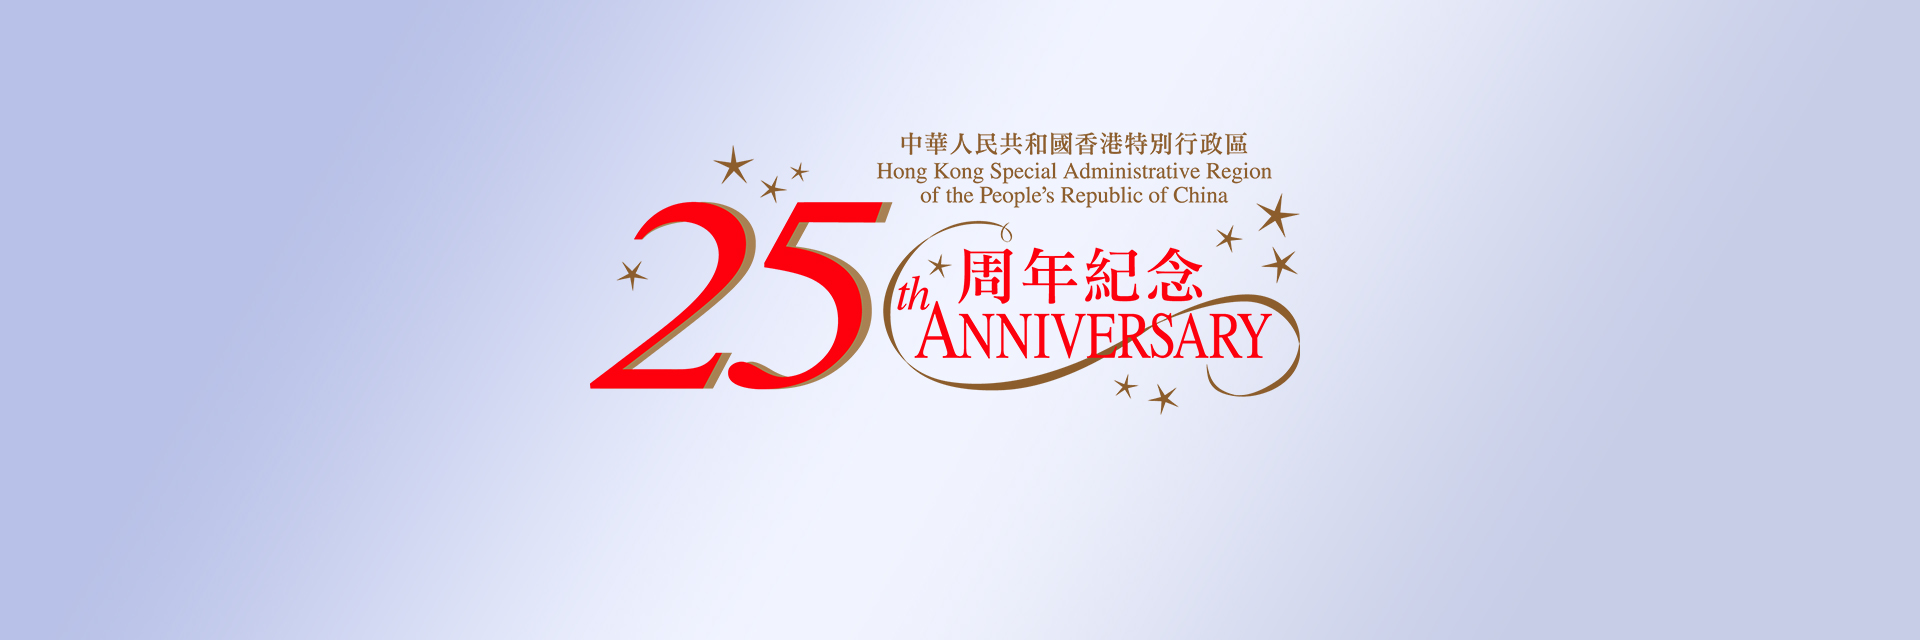 「庆祝香港特别行政区成立二十五周年」招待会（成都）